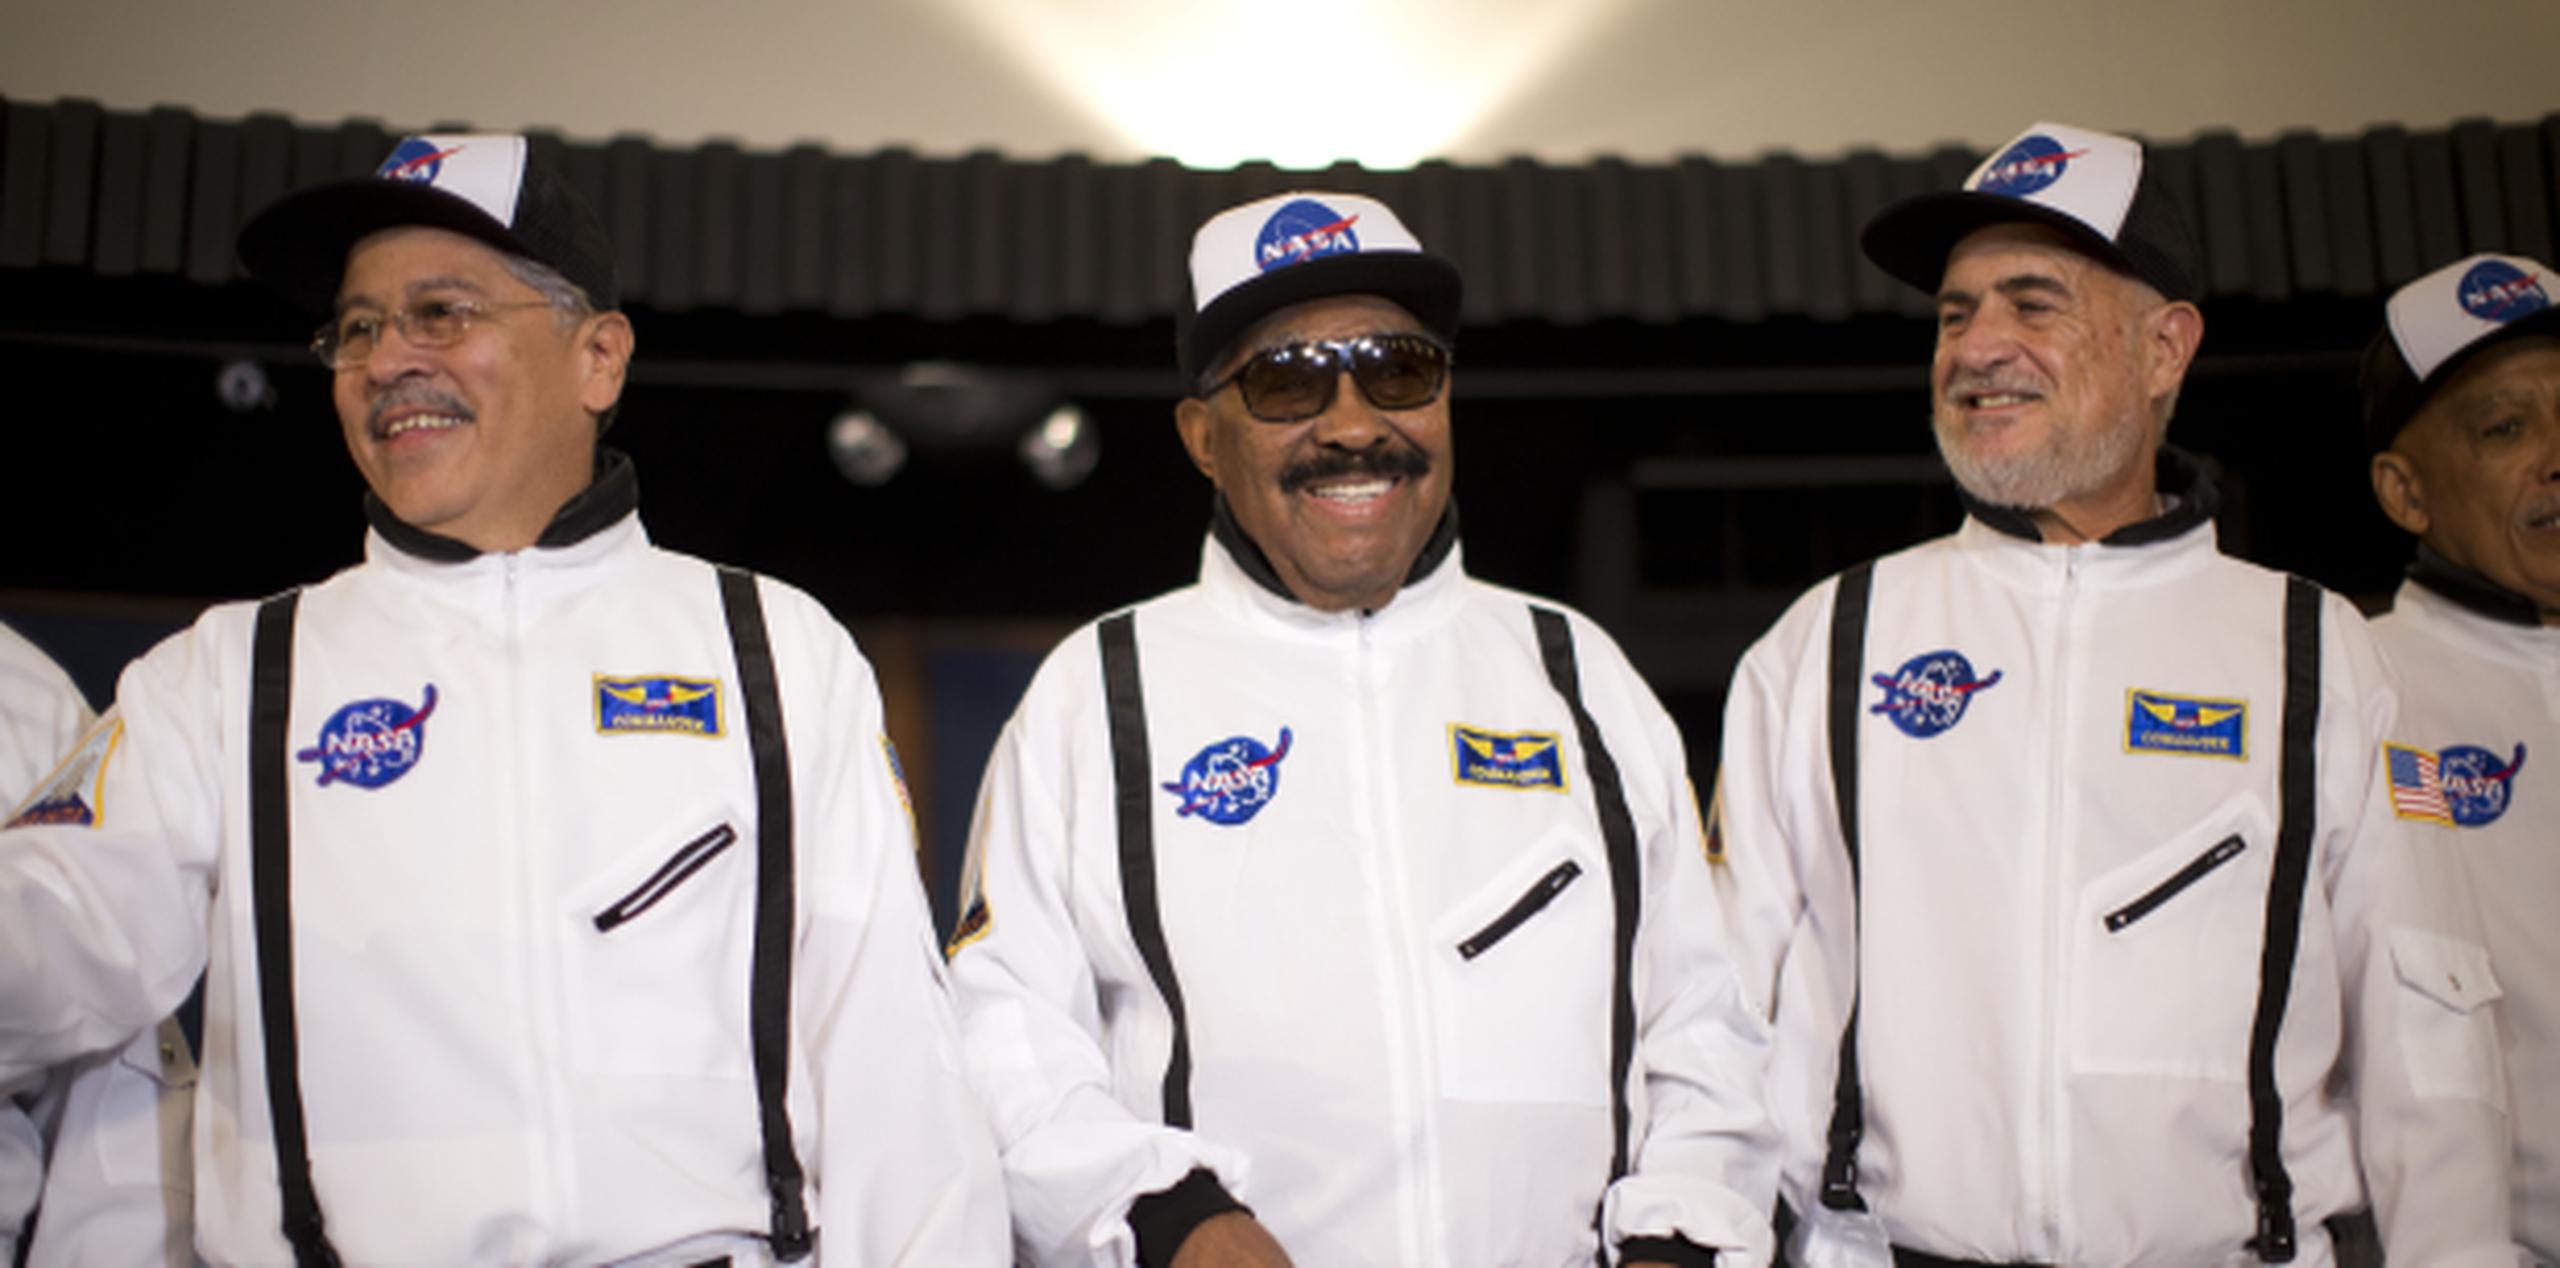 La orquesta presentó su nuevo disco vestidos de astronautas. (Foto/ Ramón 'Tonito' Zayas)